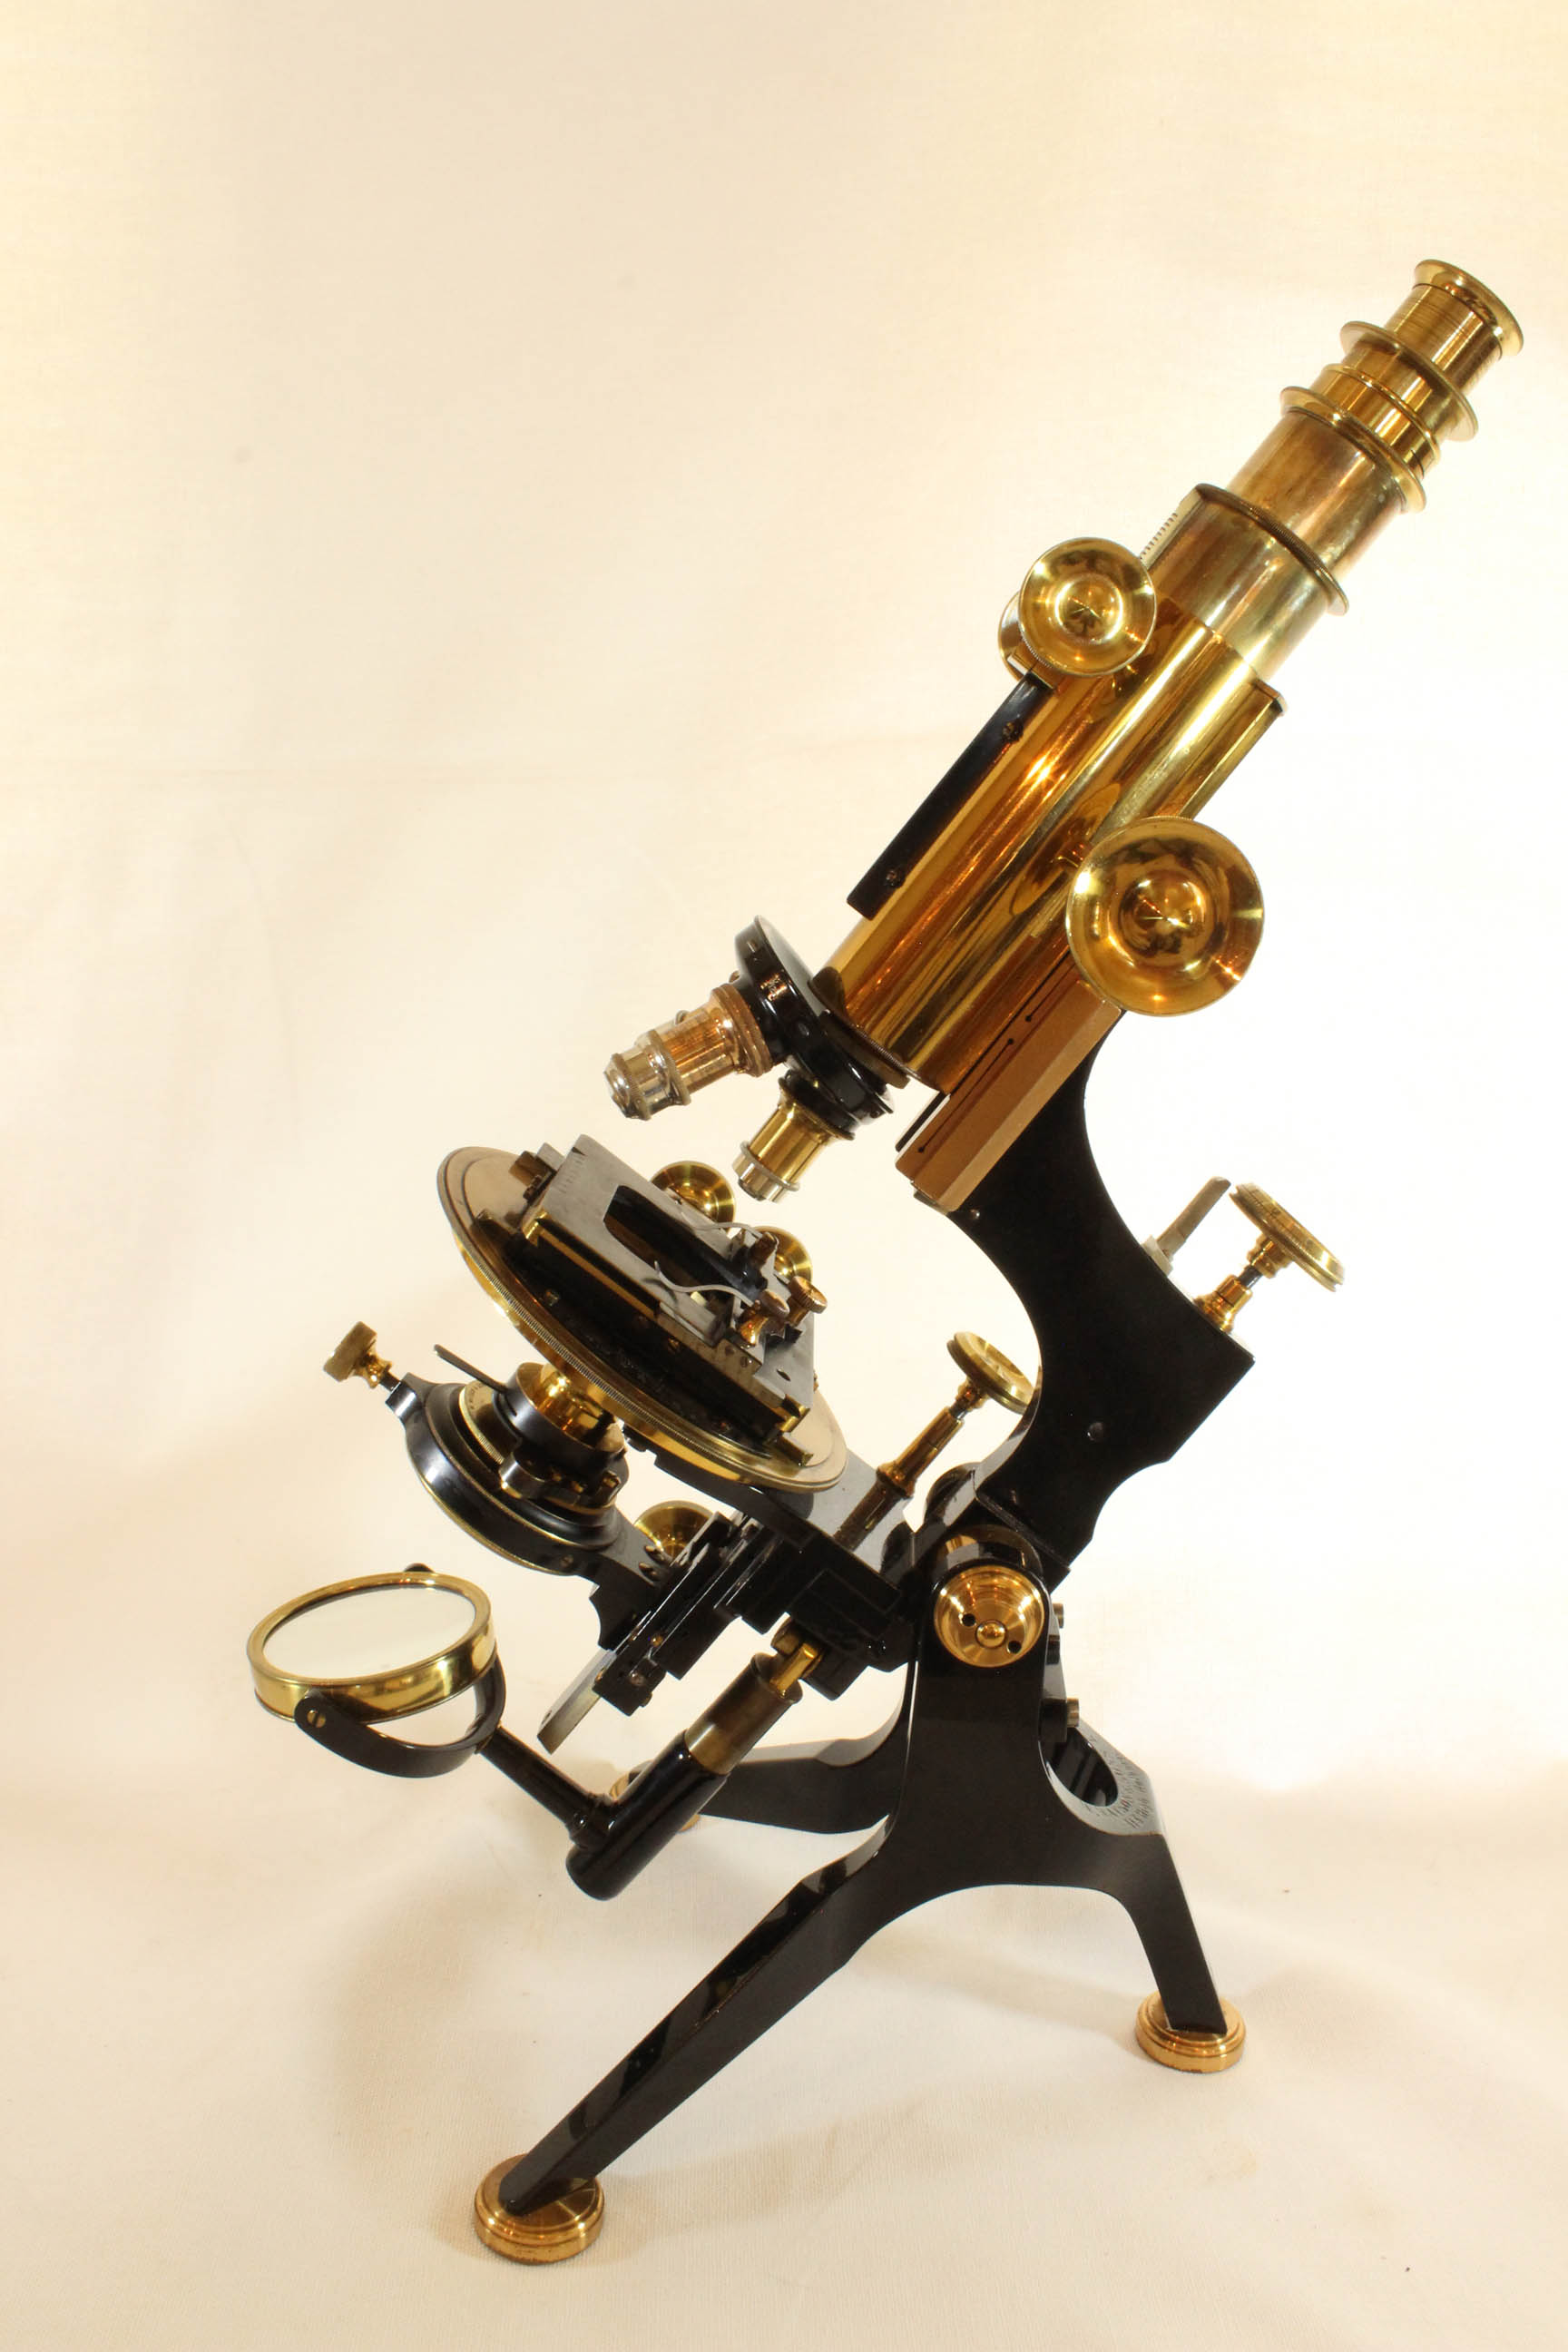 CSVH Microscope